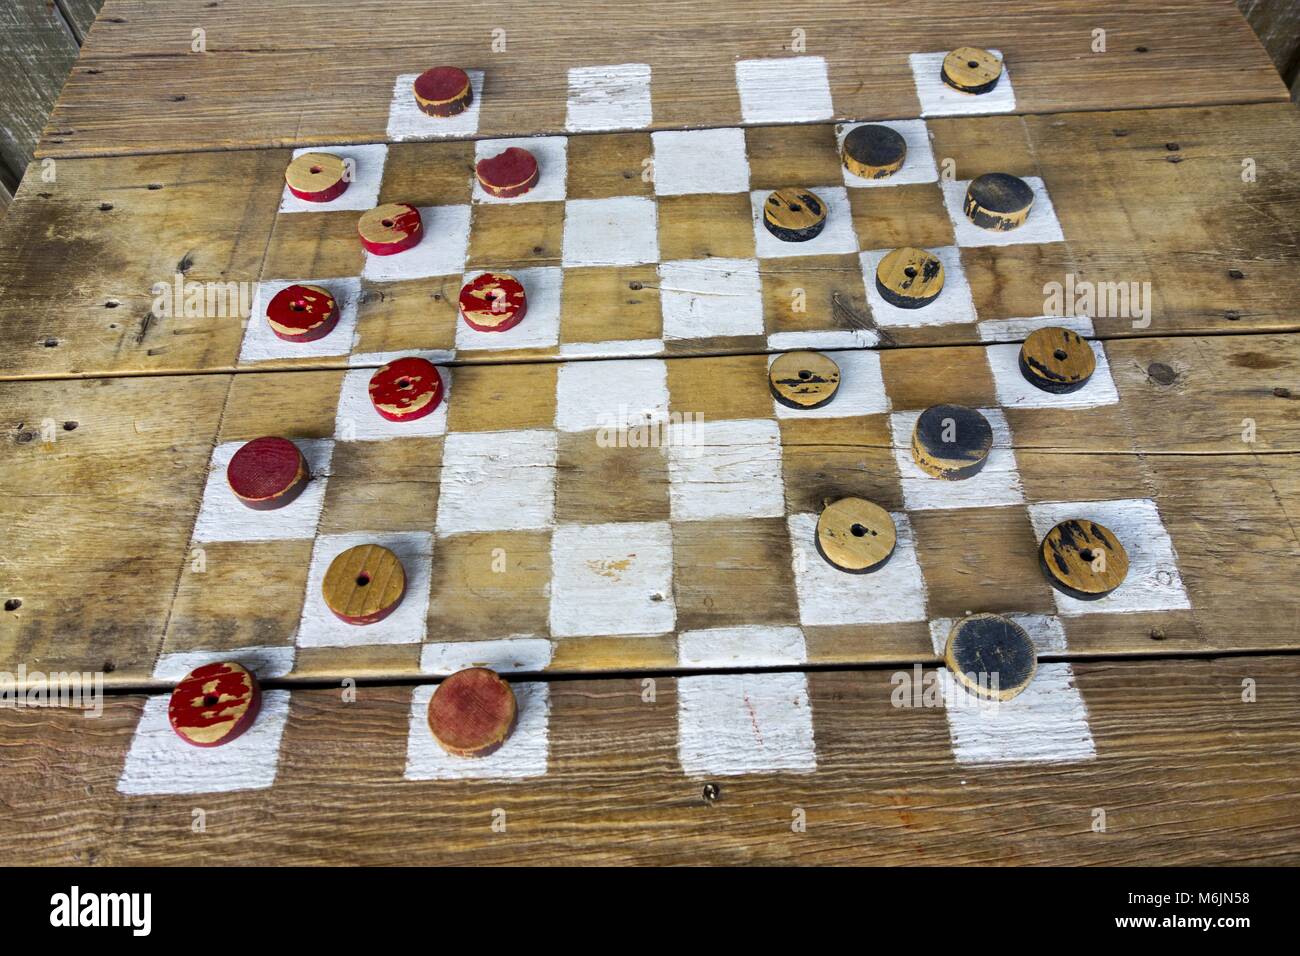 Vintage rustique Antique vieux Checkers en bois table populaire passe-temps jeu de plateau récréatif avec des pièces rouges et noires Banque D'Images